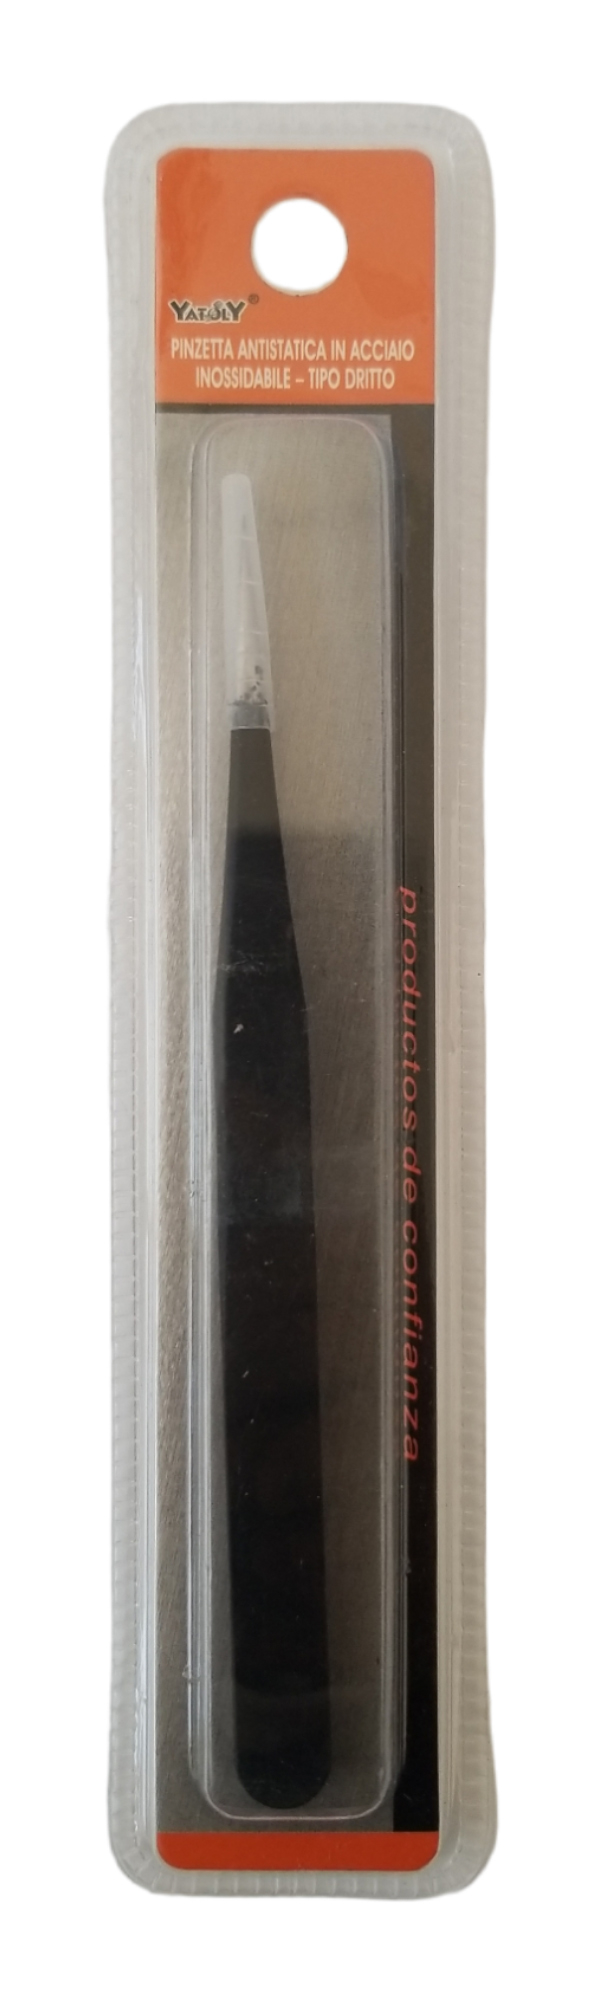 Nerezová pinzeta antistatická 142mm - černá (24ks/bal)